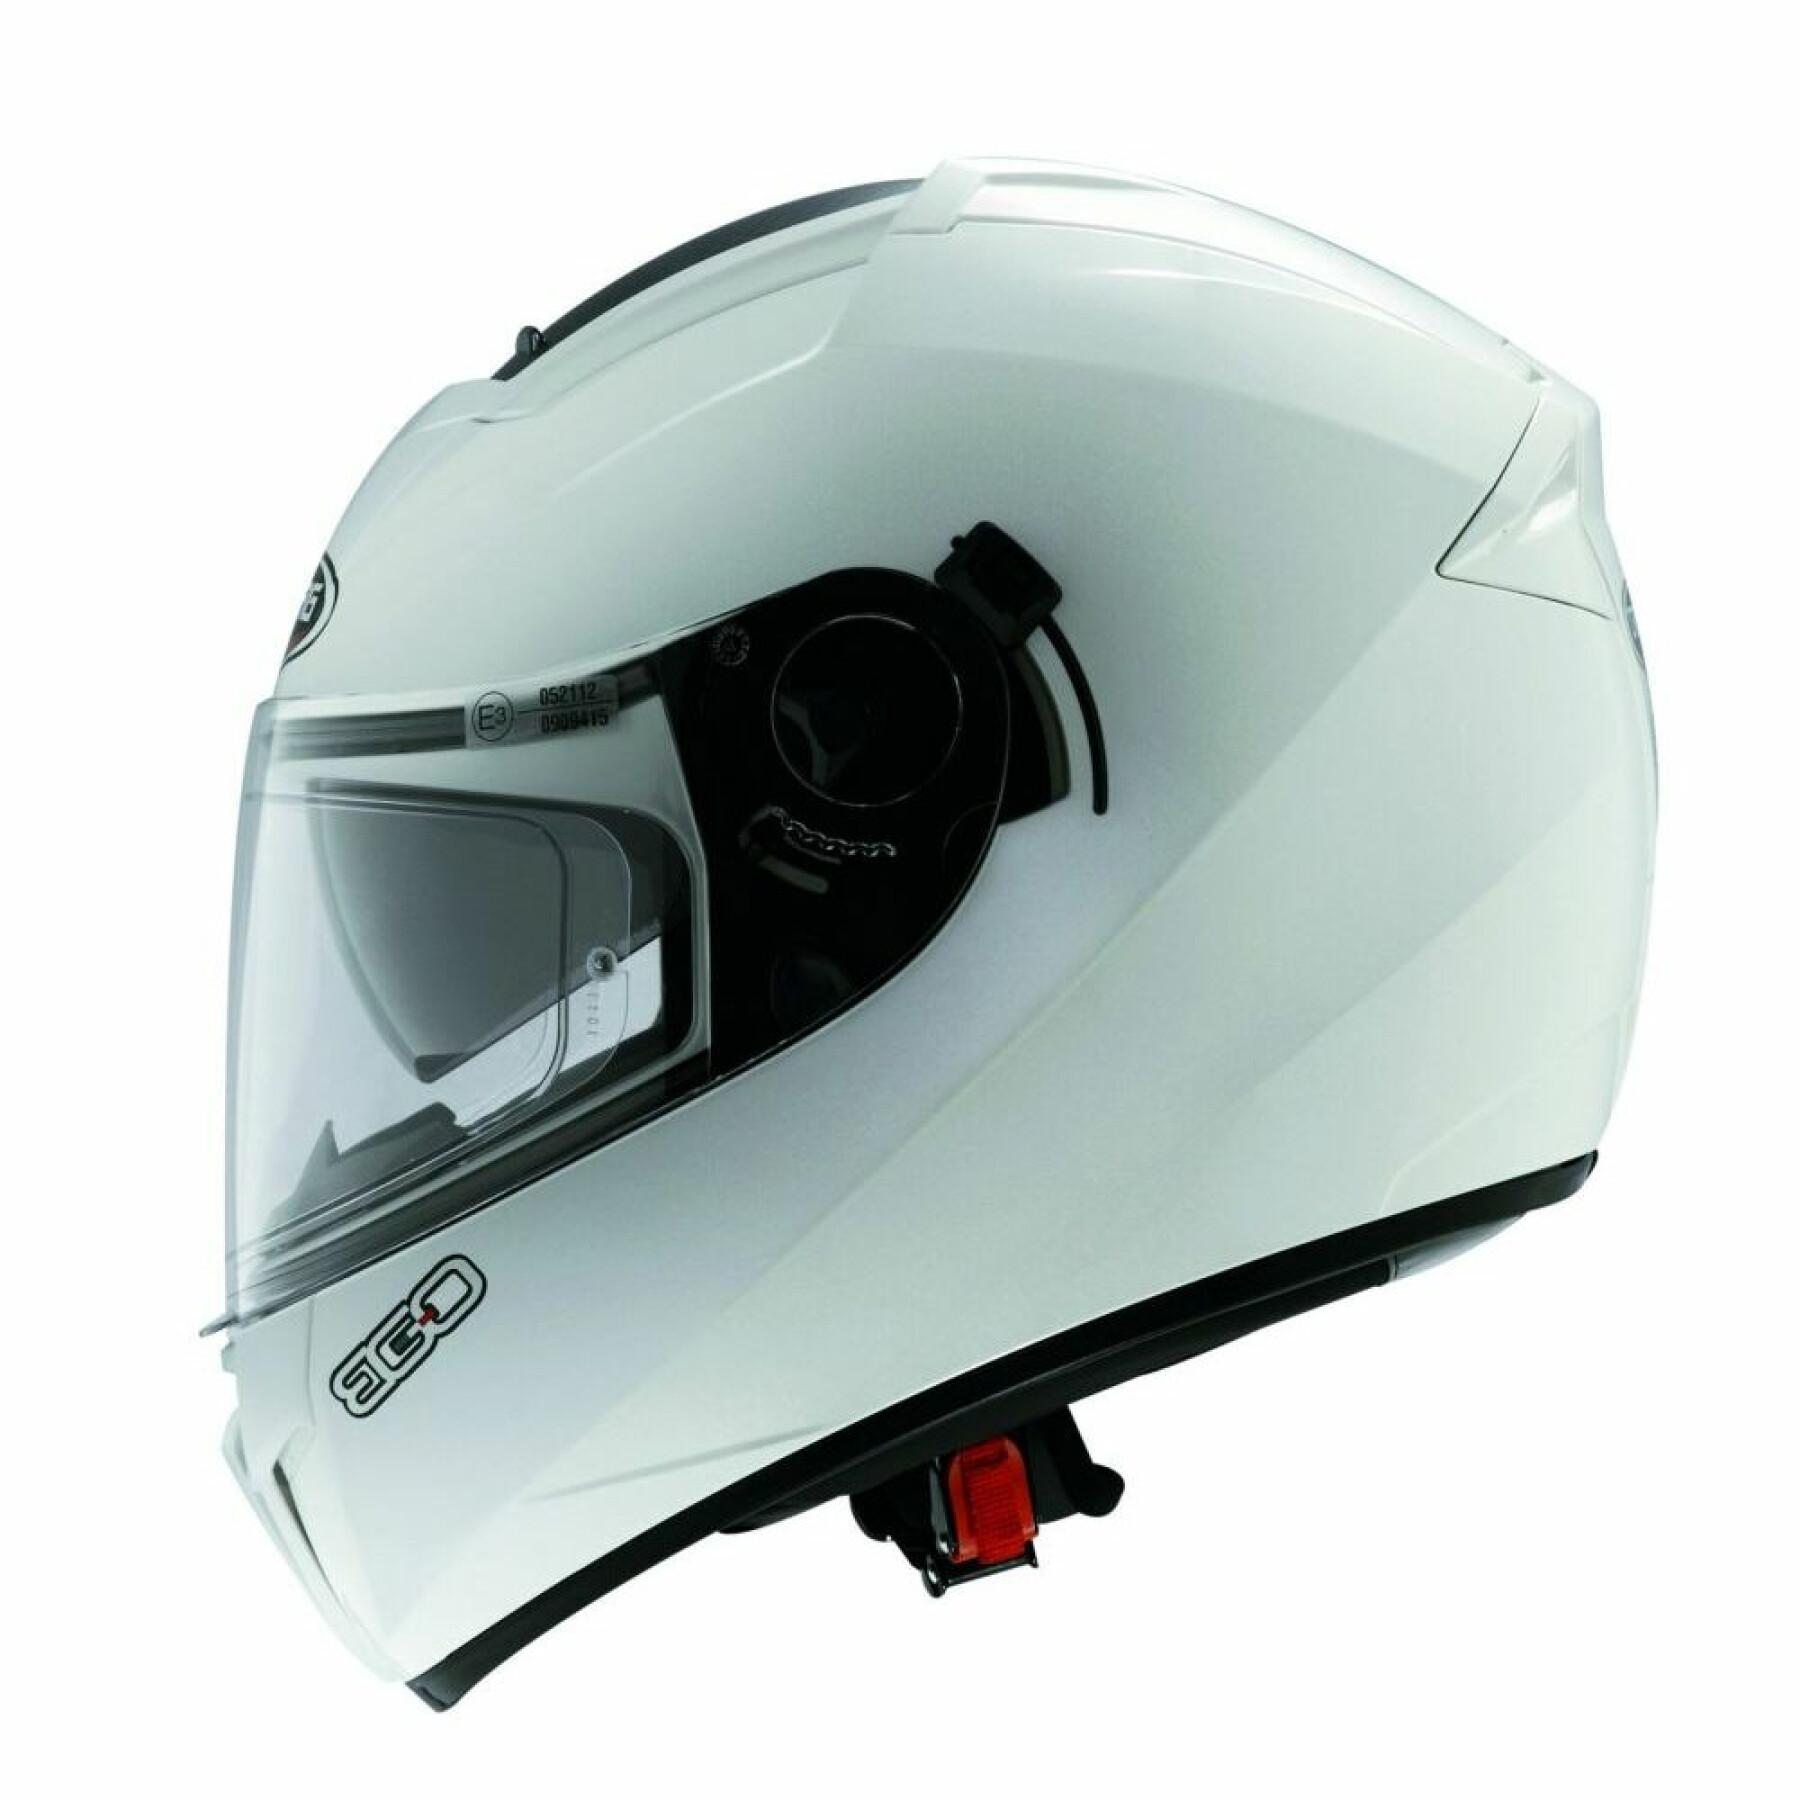 Full face motorcycle helmet Caberg ego metal